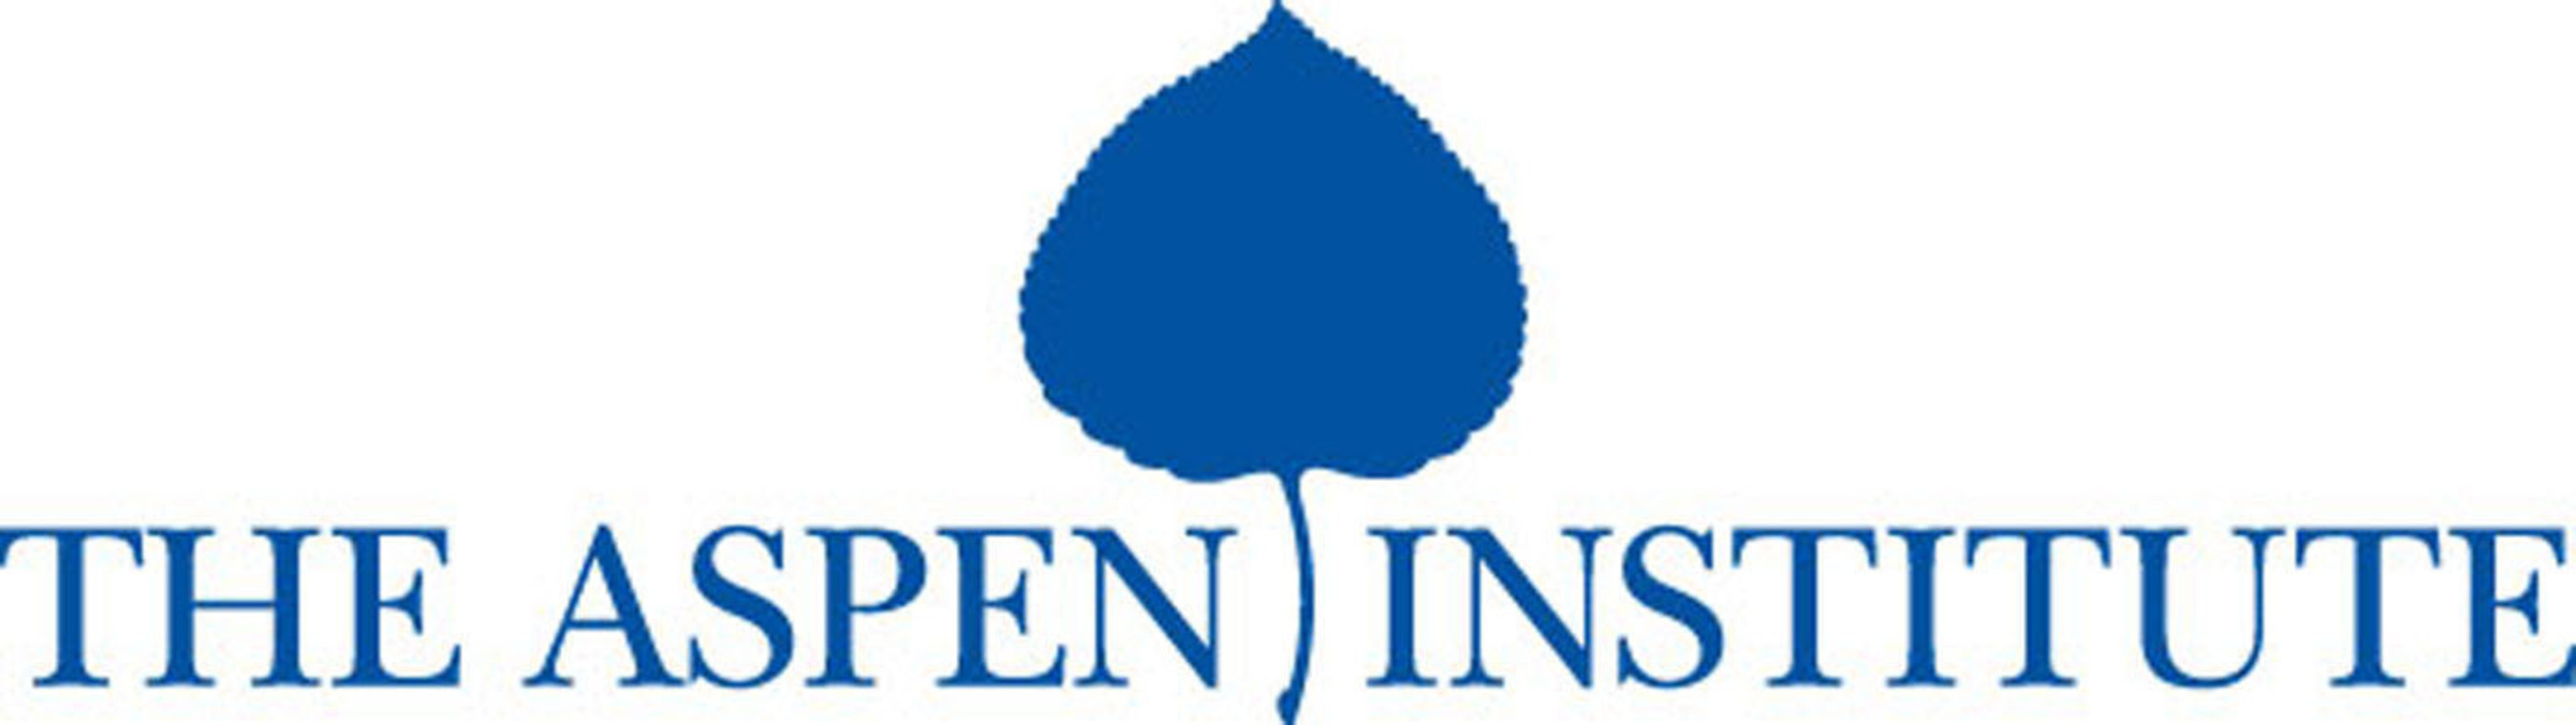 Aspen Institute logo. (PRNewsFoto/The Aspen Institute) (PRNewsFoto/)